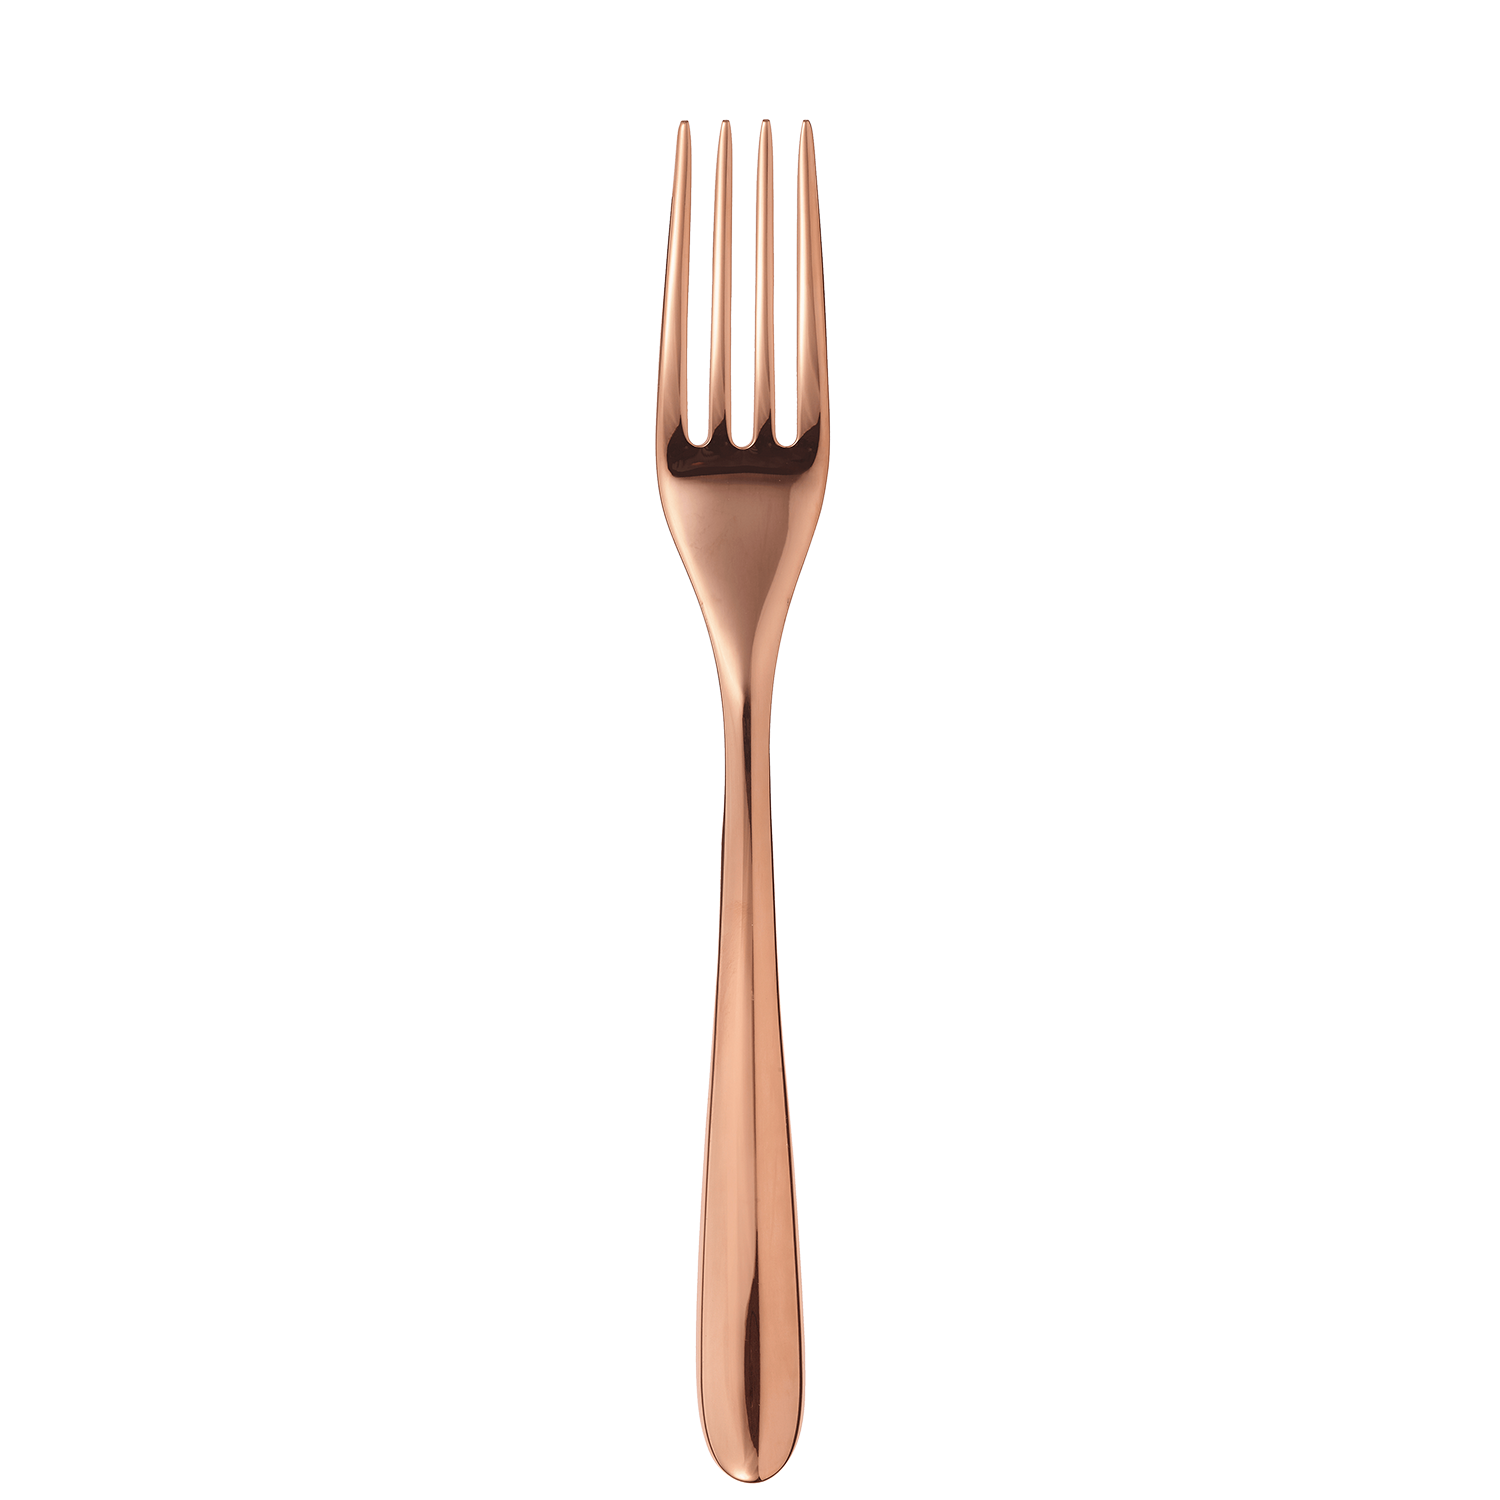 Copper stainless steel dessert fork